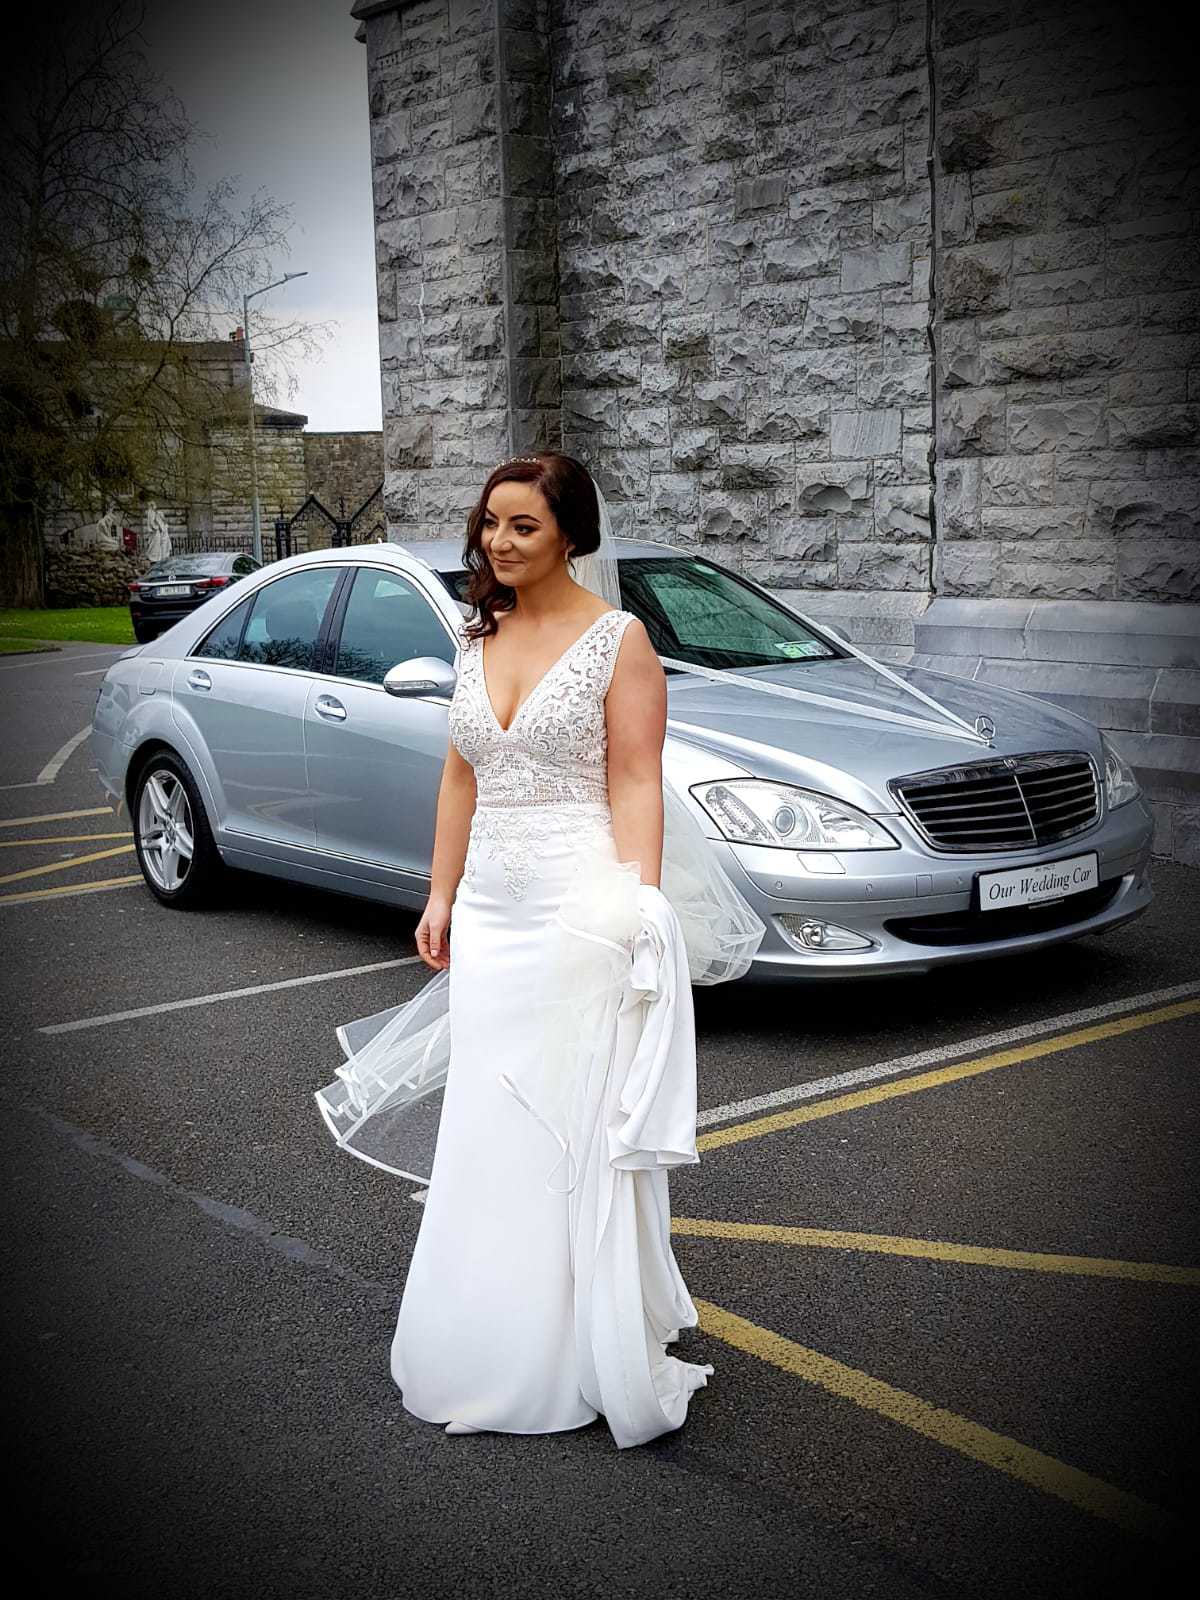 Wedding Car Galway ¦ Ireland